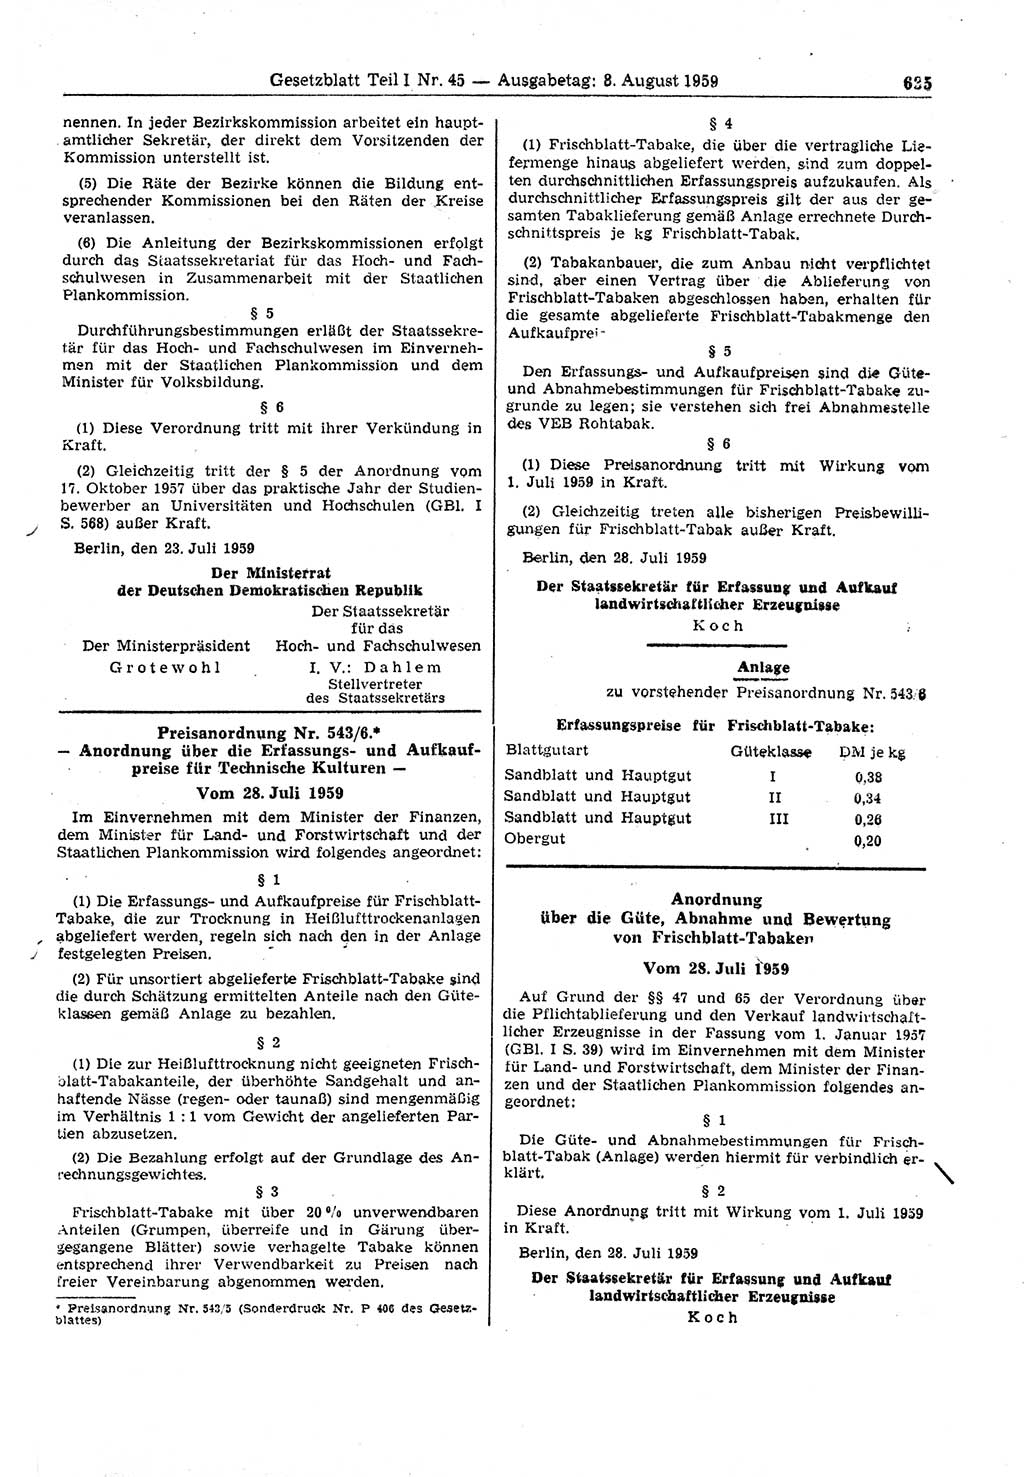 Gesetzblatt (GBl.) der Deutschen Demokratischen Republik (DDR) Teil Ⅰ 1959, Seite 635 (GBl. DDR Ⅰ 1959, S. 635)